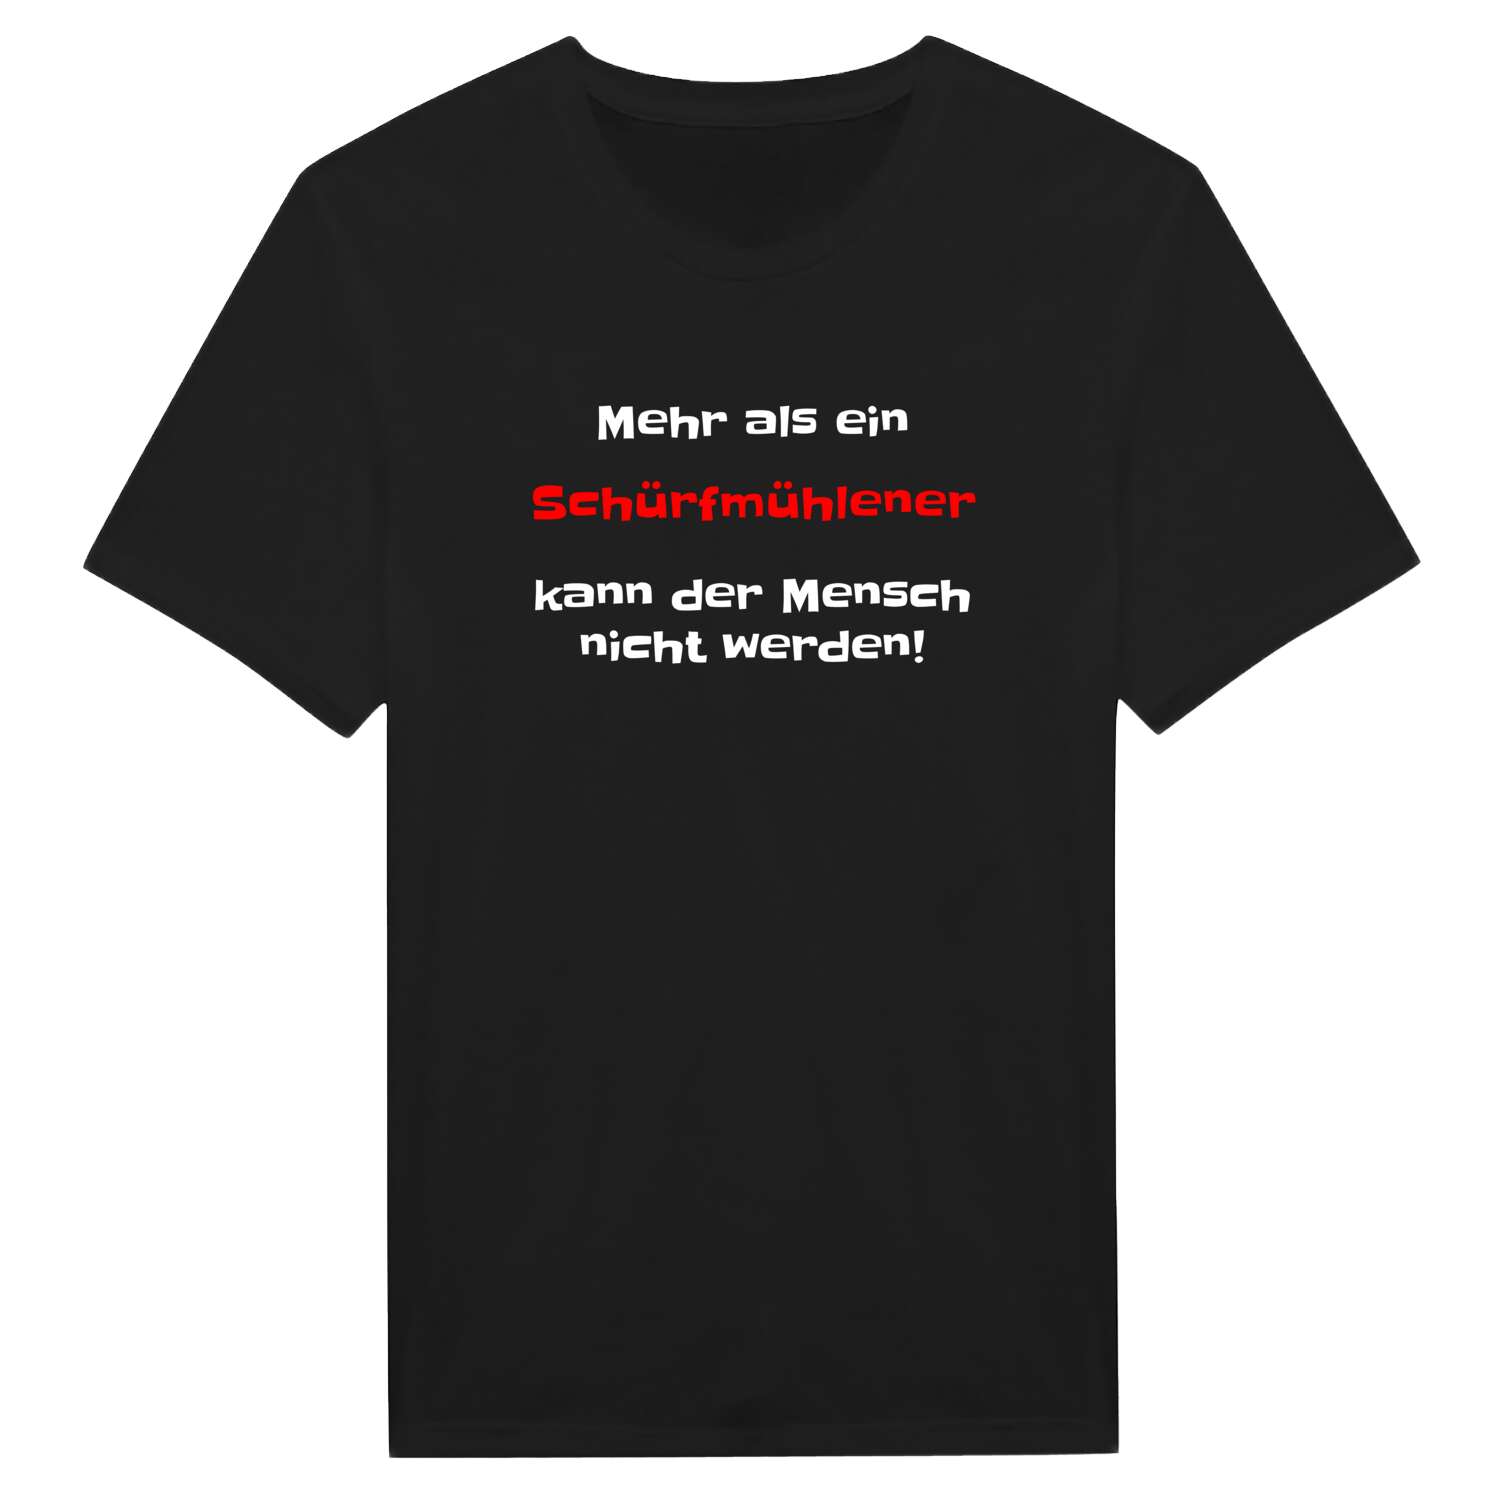 Schürfmühle T-Shirt »Mehr als ein«